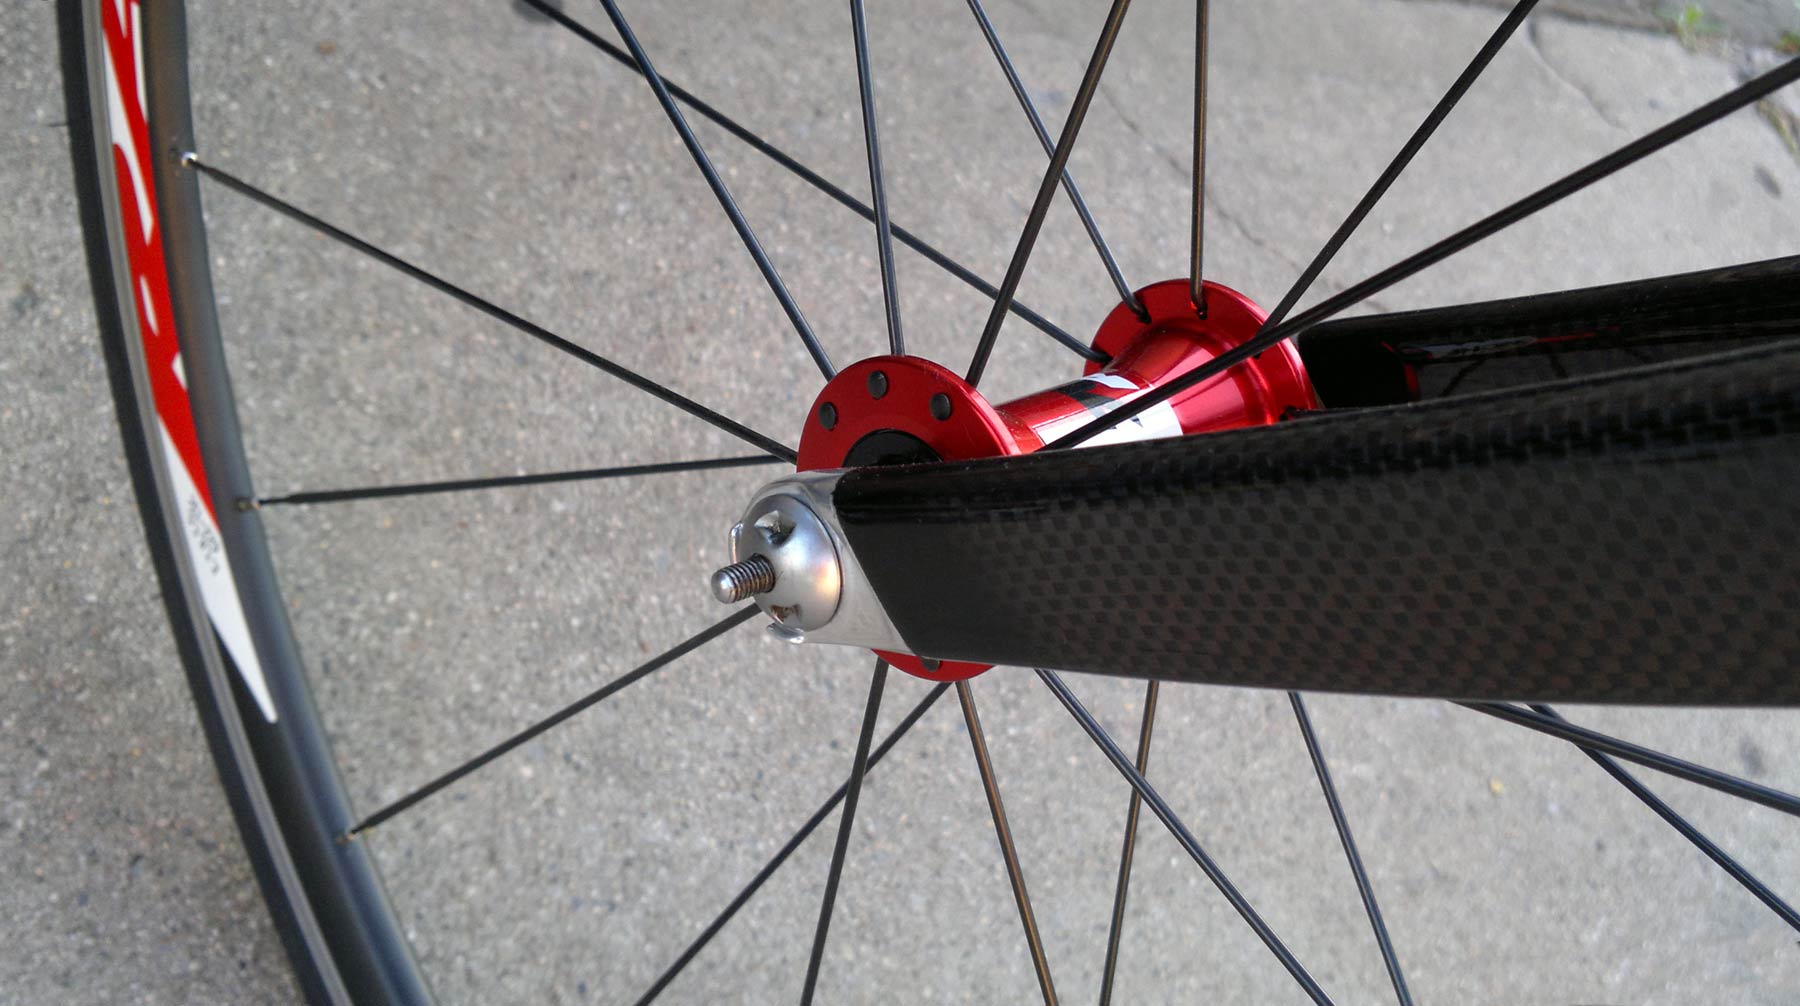 bike front wheel lock